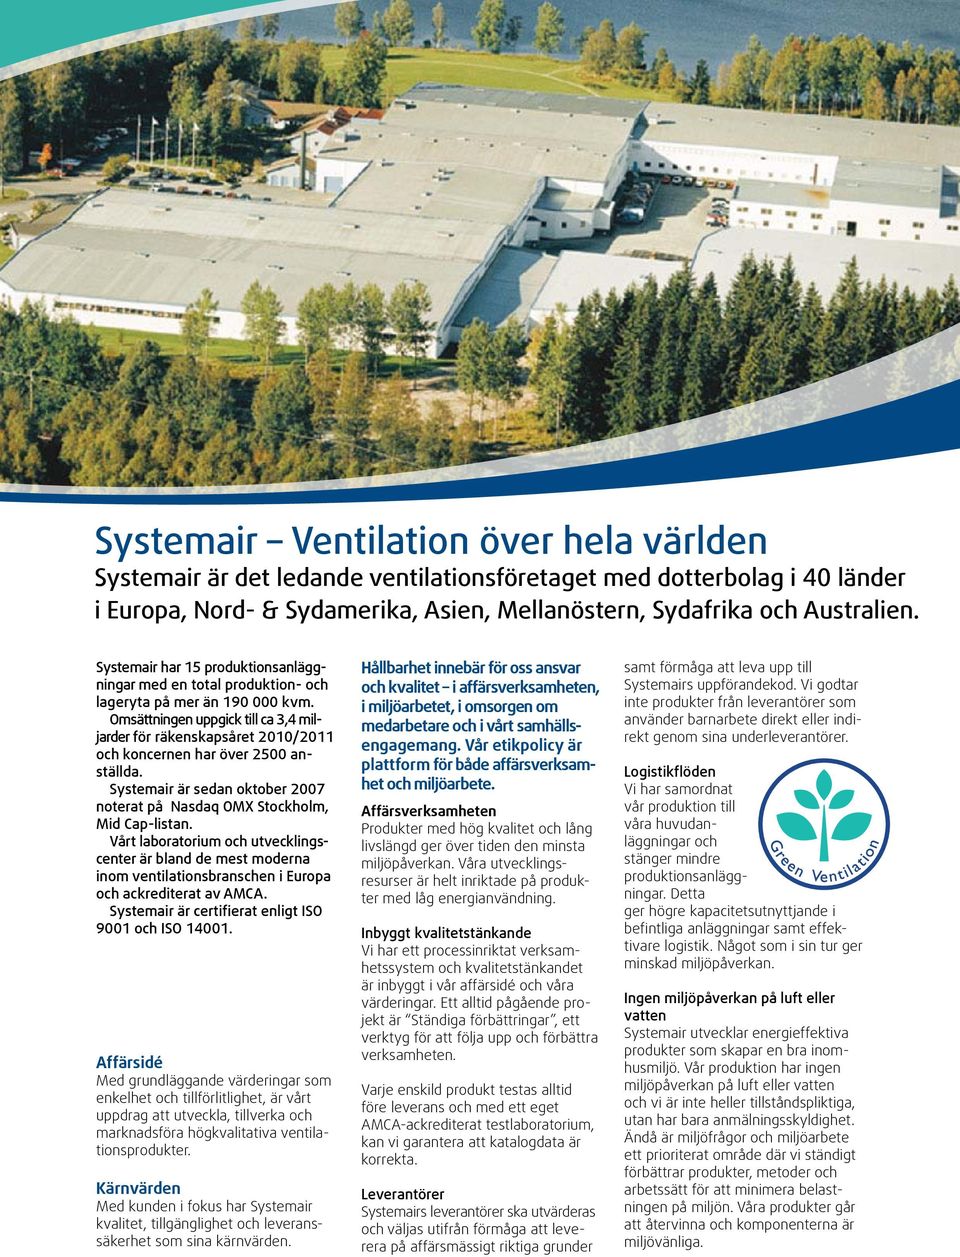 Omsättningen uppgick till ca 3,4 miljarder för räkenskapsåret 2010/2011 och koncernen har över 2500 anställda. Systemair är sedan oktober 2007 noterat på Nasdaq OMX Stockholm, Mid Cap-listan.